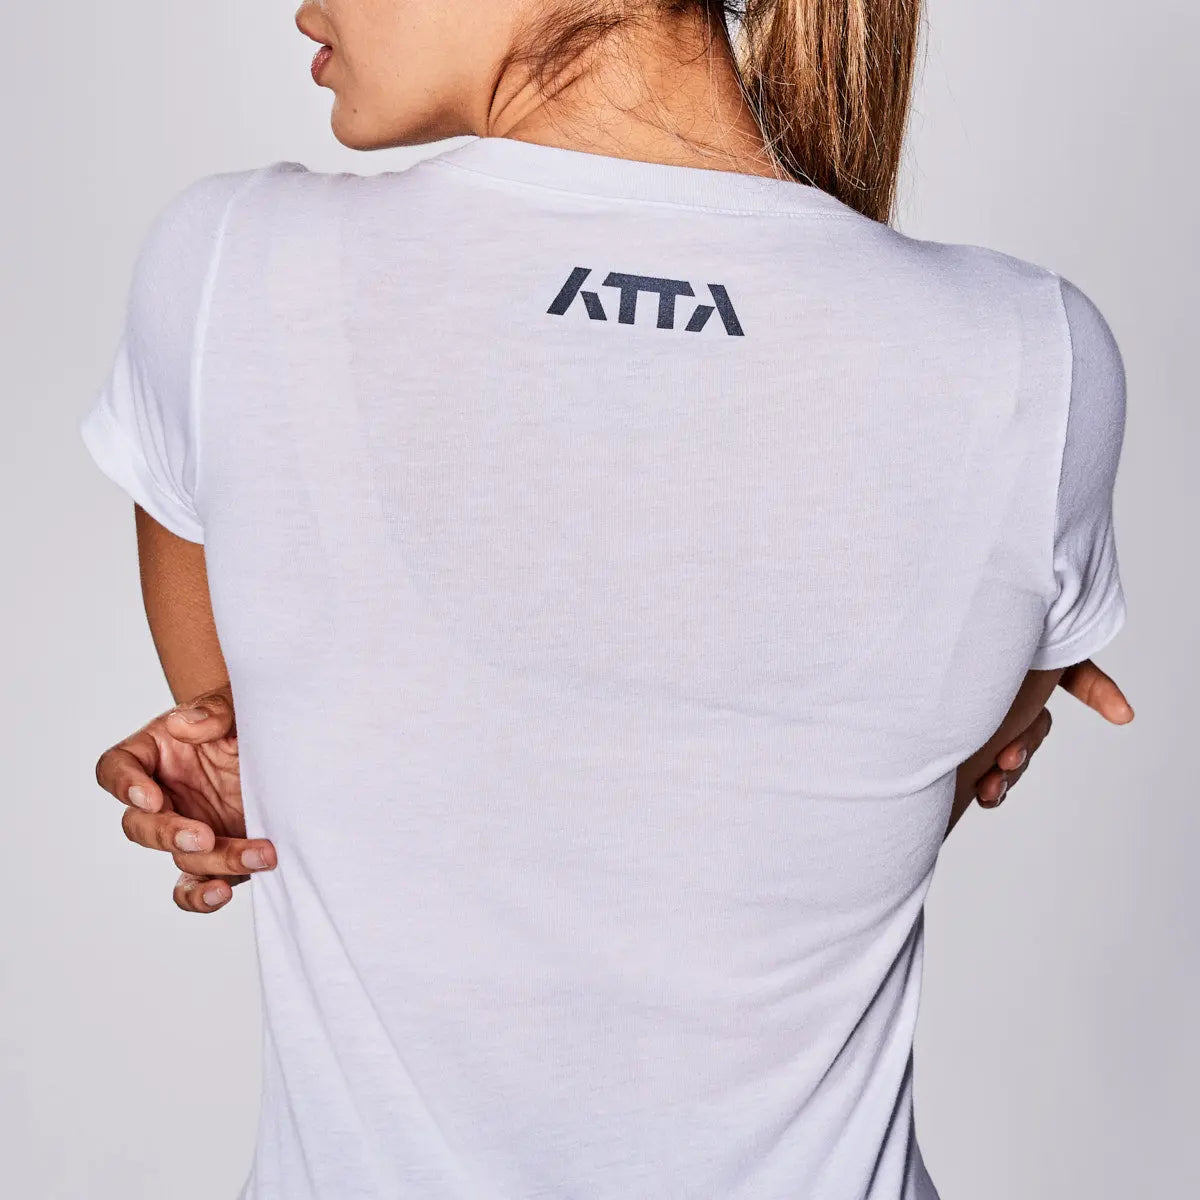 ATTA Womens Geometric A Tri-Blend Tee - White ATTA